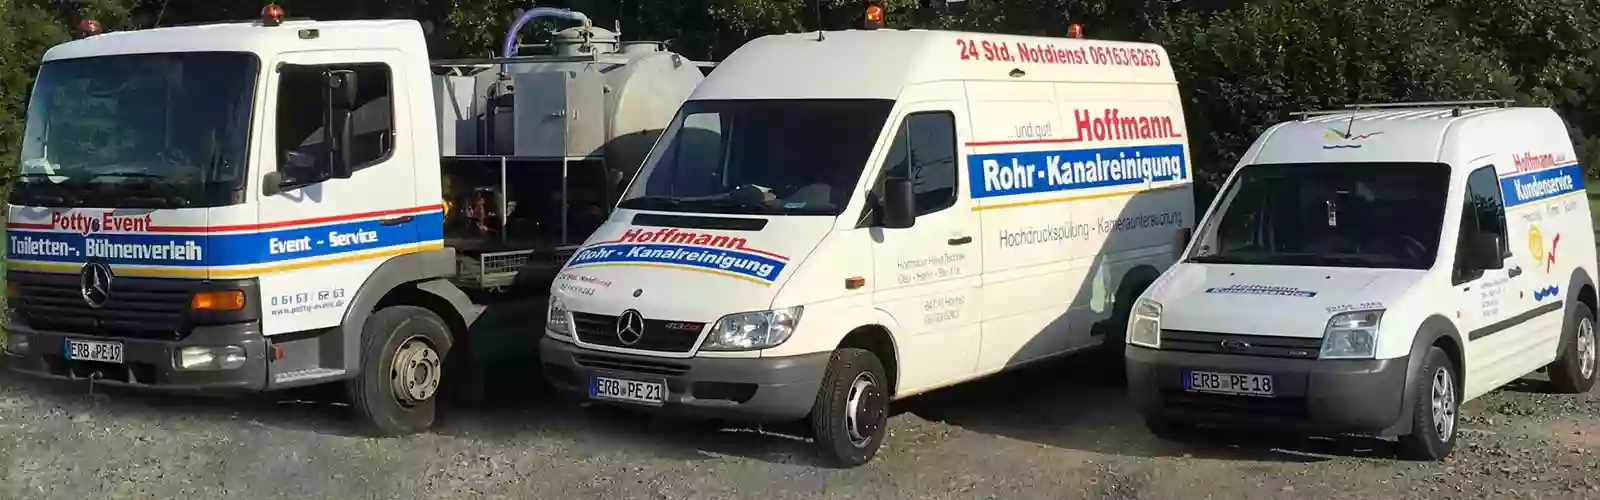 Zweigstelle HHT Hoffmann HausTechnik / Rohr- und Kanalreinigung Notdienst